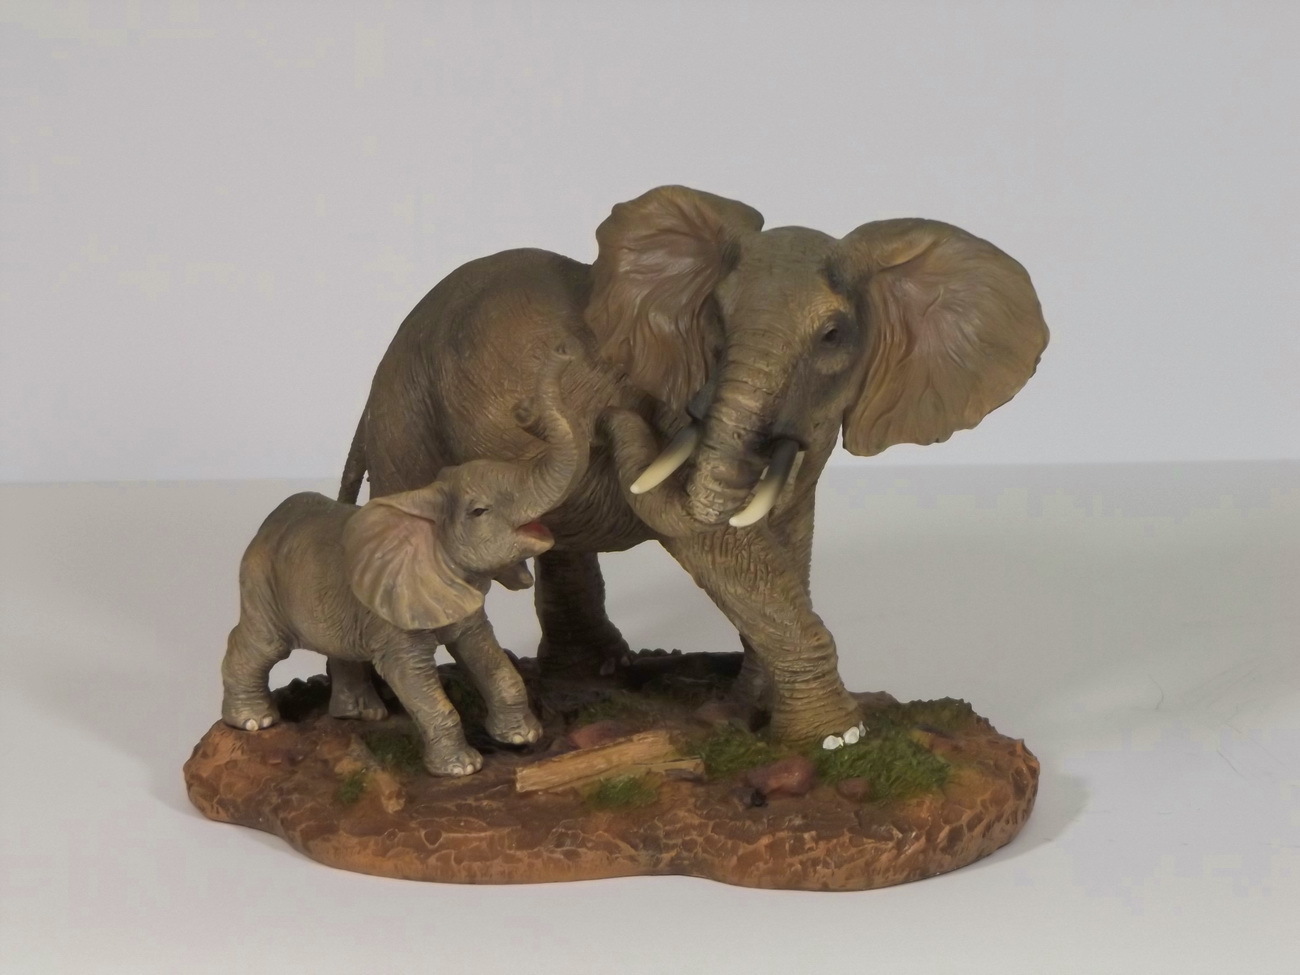 Elefanten Elefant auf Platte Skulptur Elefanten Deko Garten Tier Figur Afrika Statue 